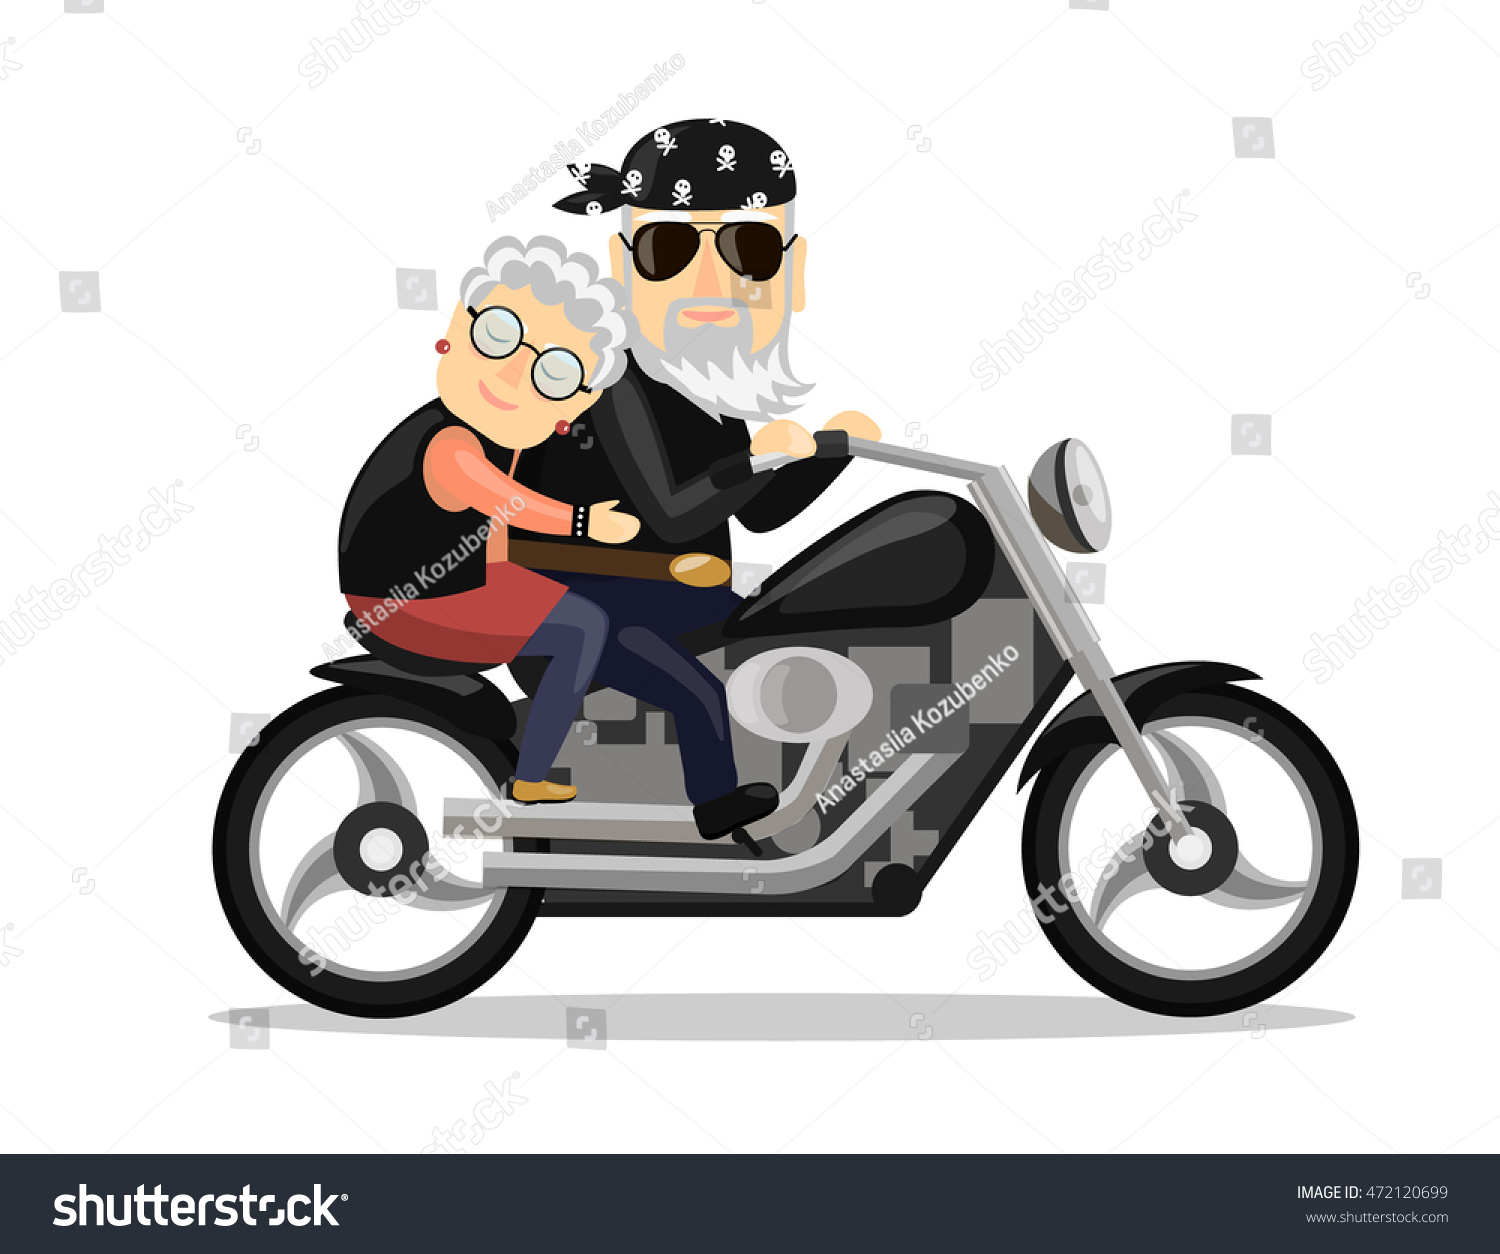 Бабушка и дедушка на мотоцикле прикольные